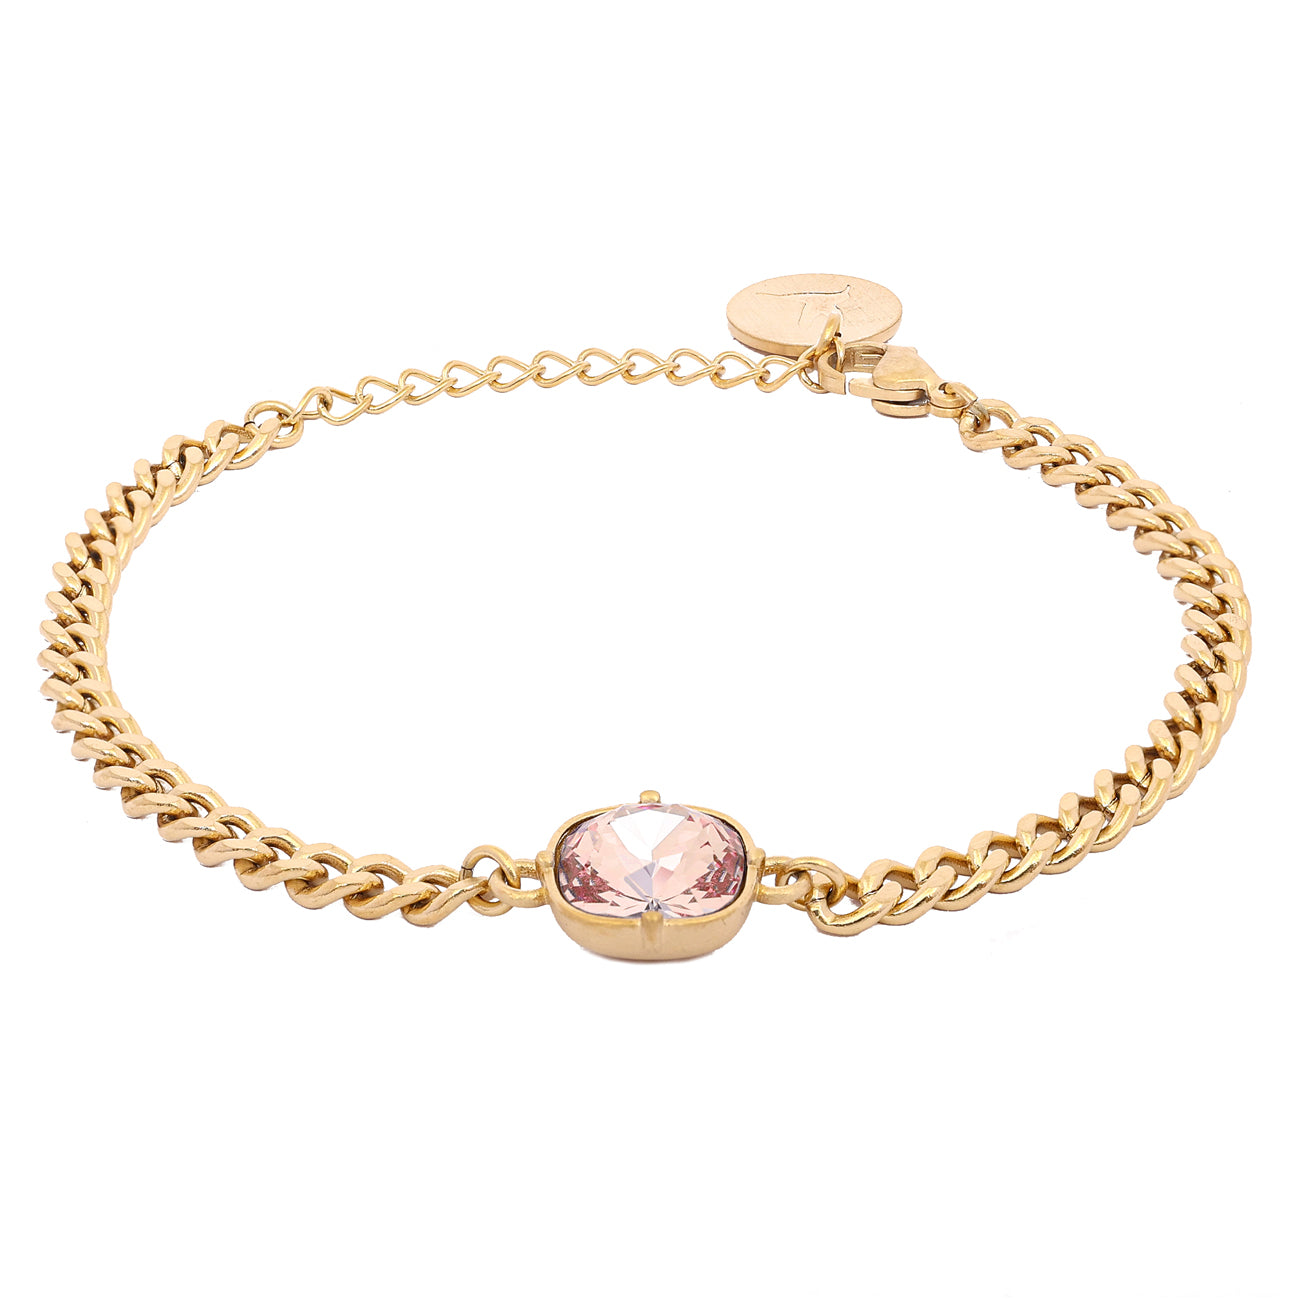 Carla Swarovski bracelet - Light peach